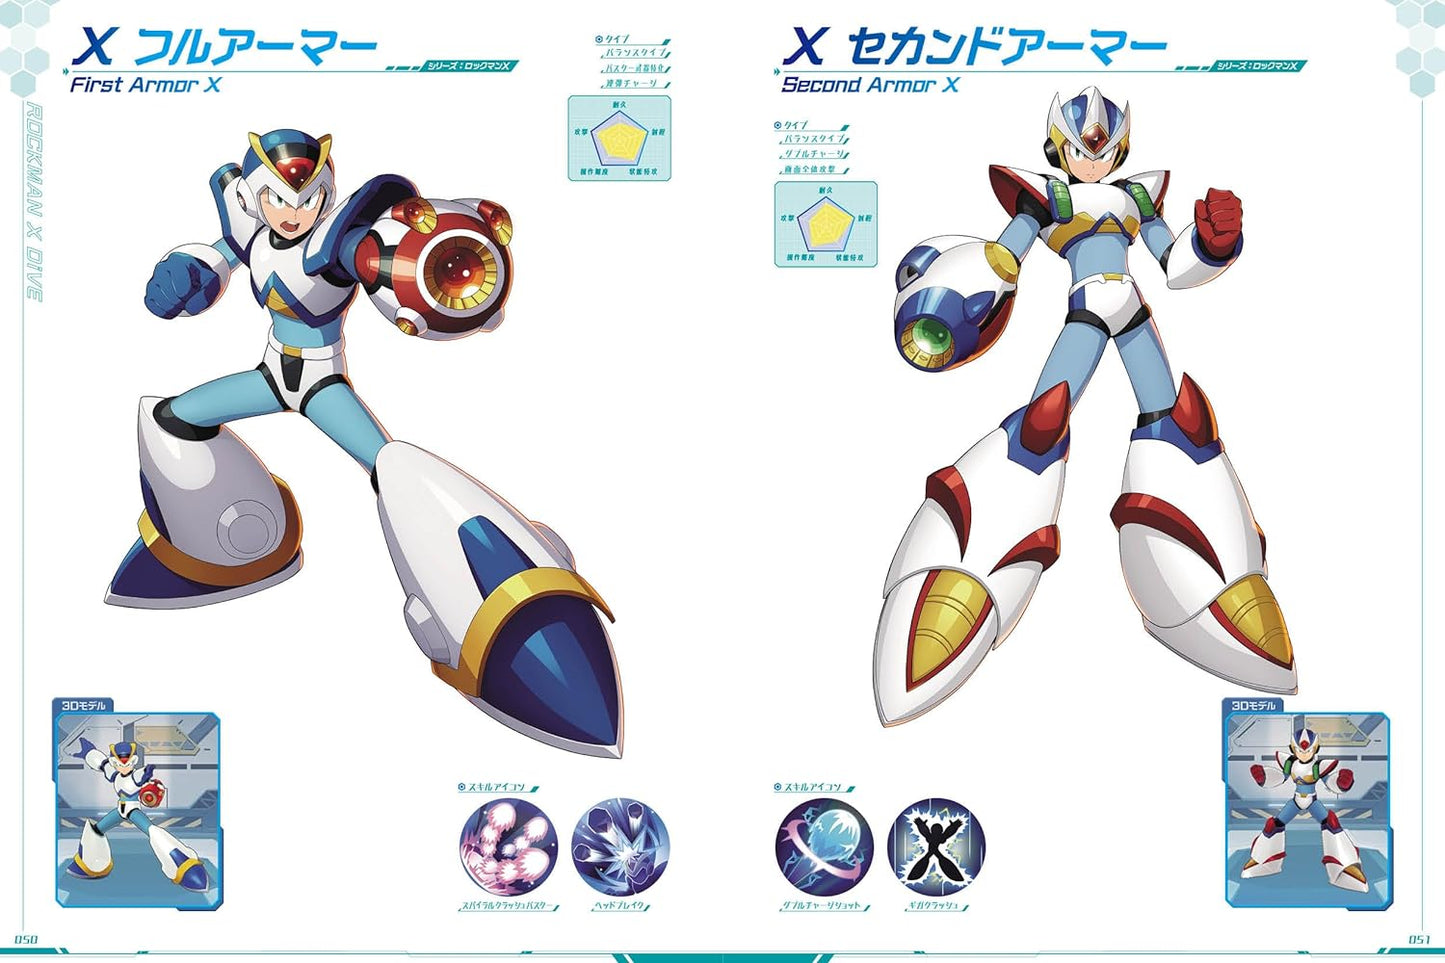 Rockman X DiVE / Mega Man X DiVE Illustrations